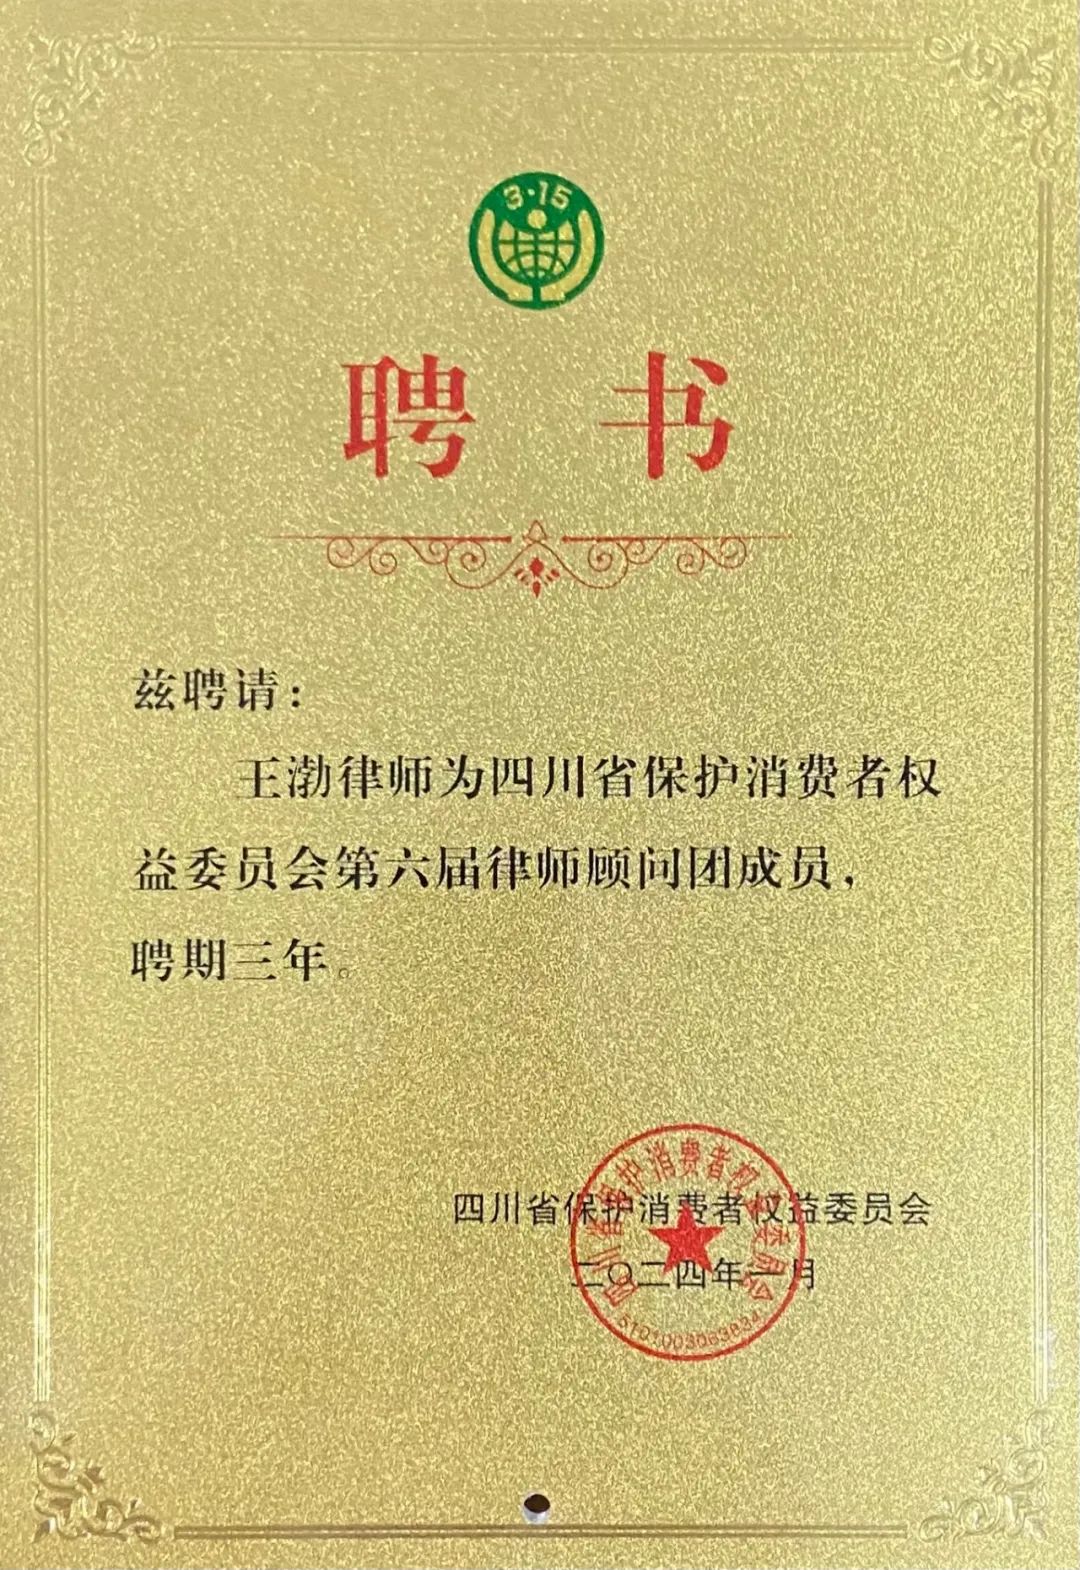 王渤为四川省保护消费者权益委员会第六届律师顾问团成员,并颁发聘书